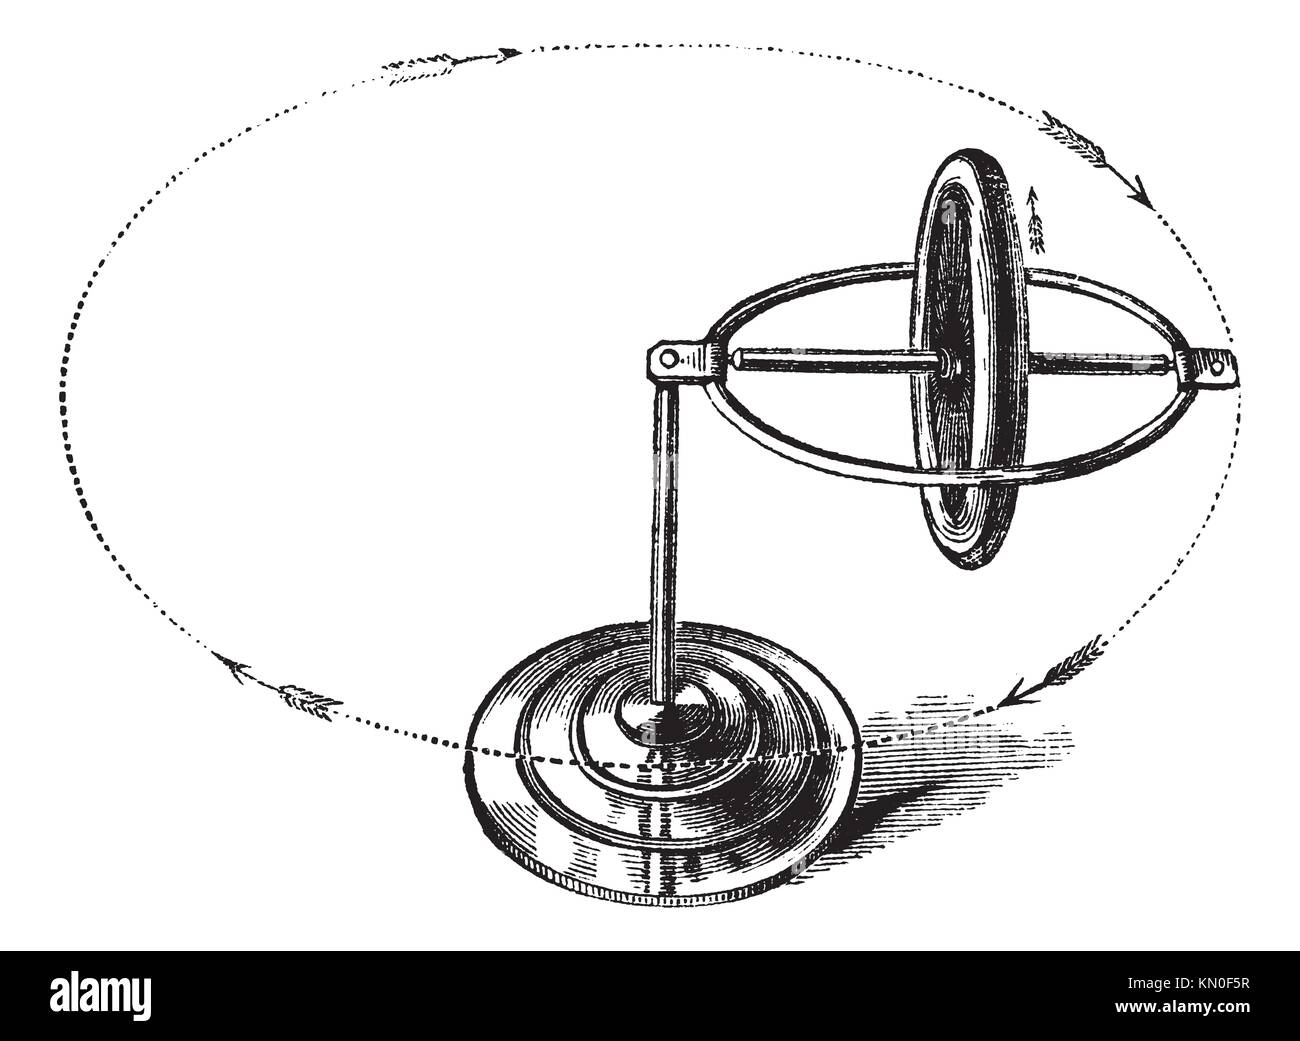 Gyroscope vintage engraving Old engraved illustration of gyroscope Stock Photo